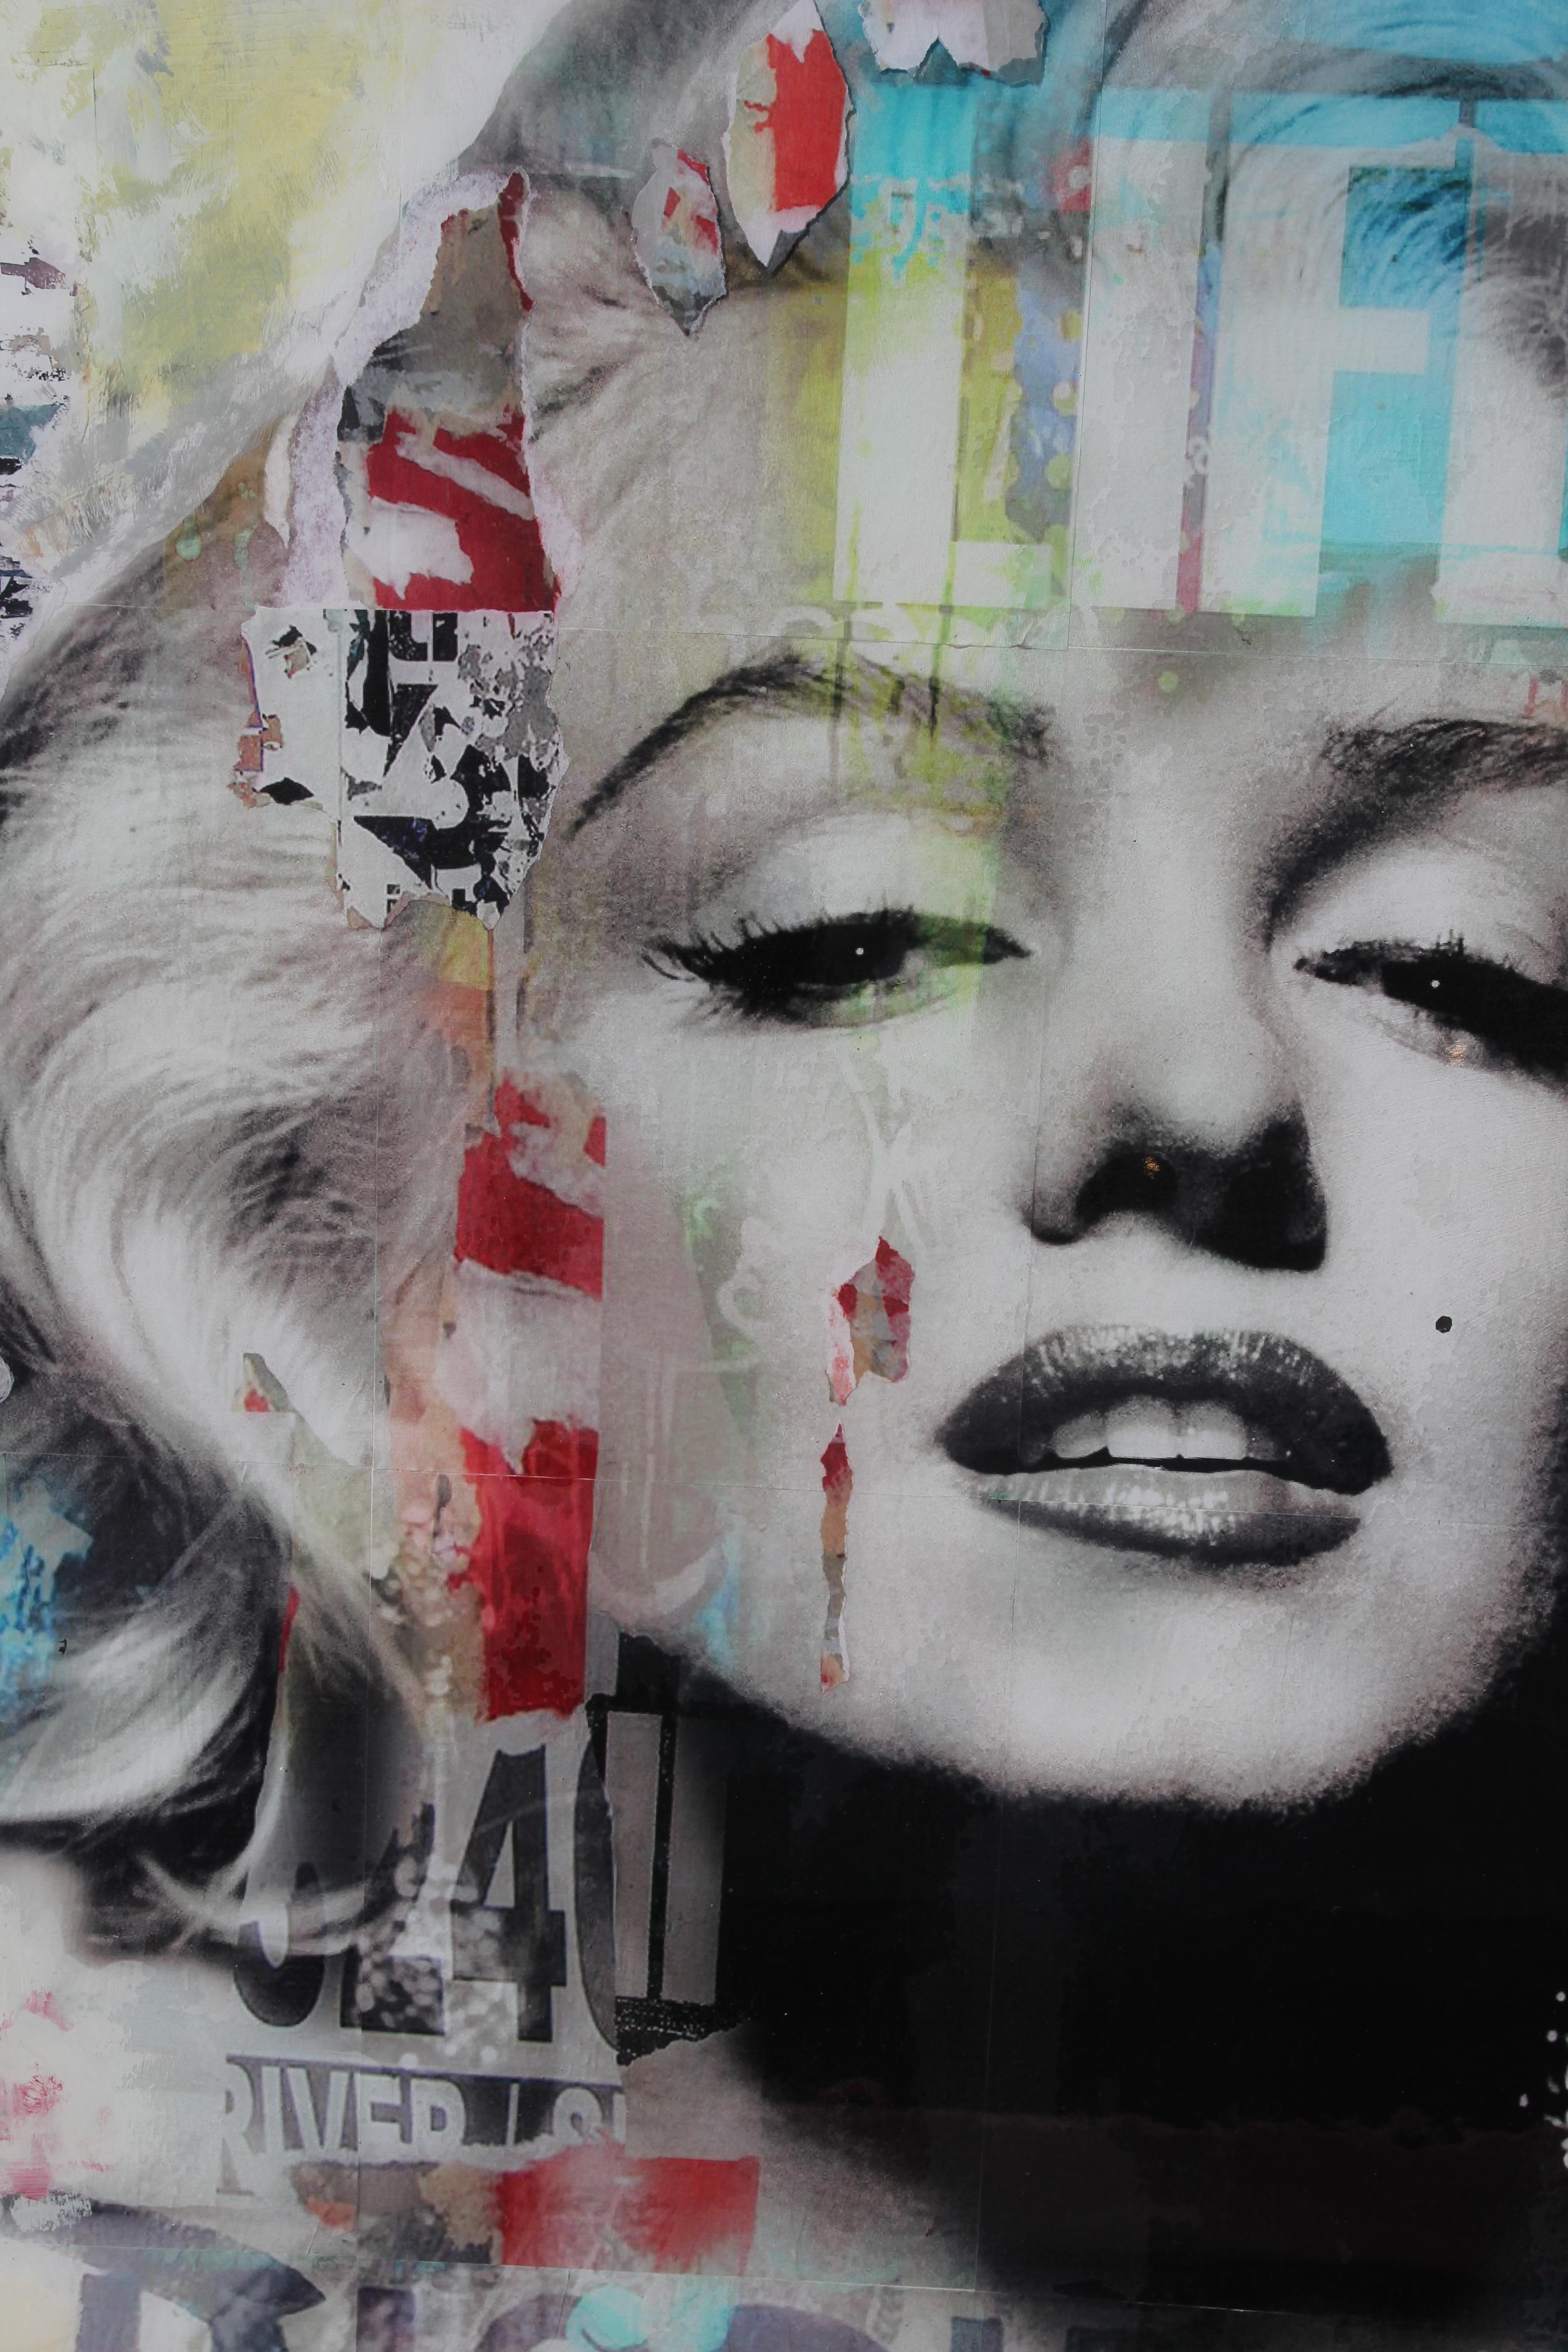 Vogue - Marilyn Monroe - Collage contemporain en techniques mixtes - Contemporain Mixed Media Art par Jim Hudek